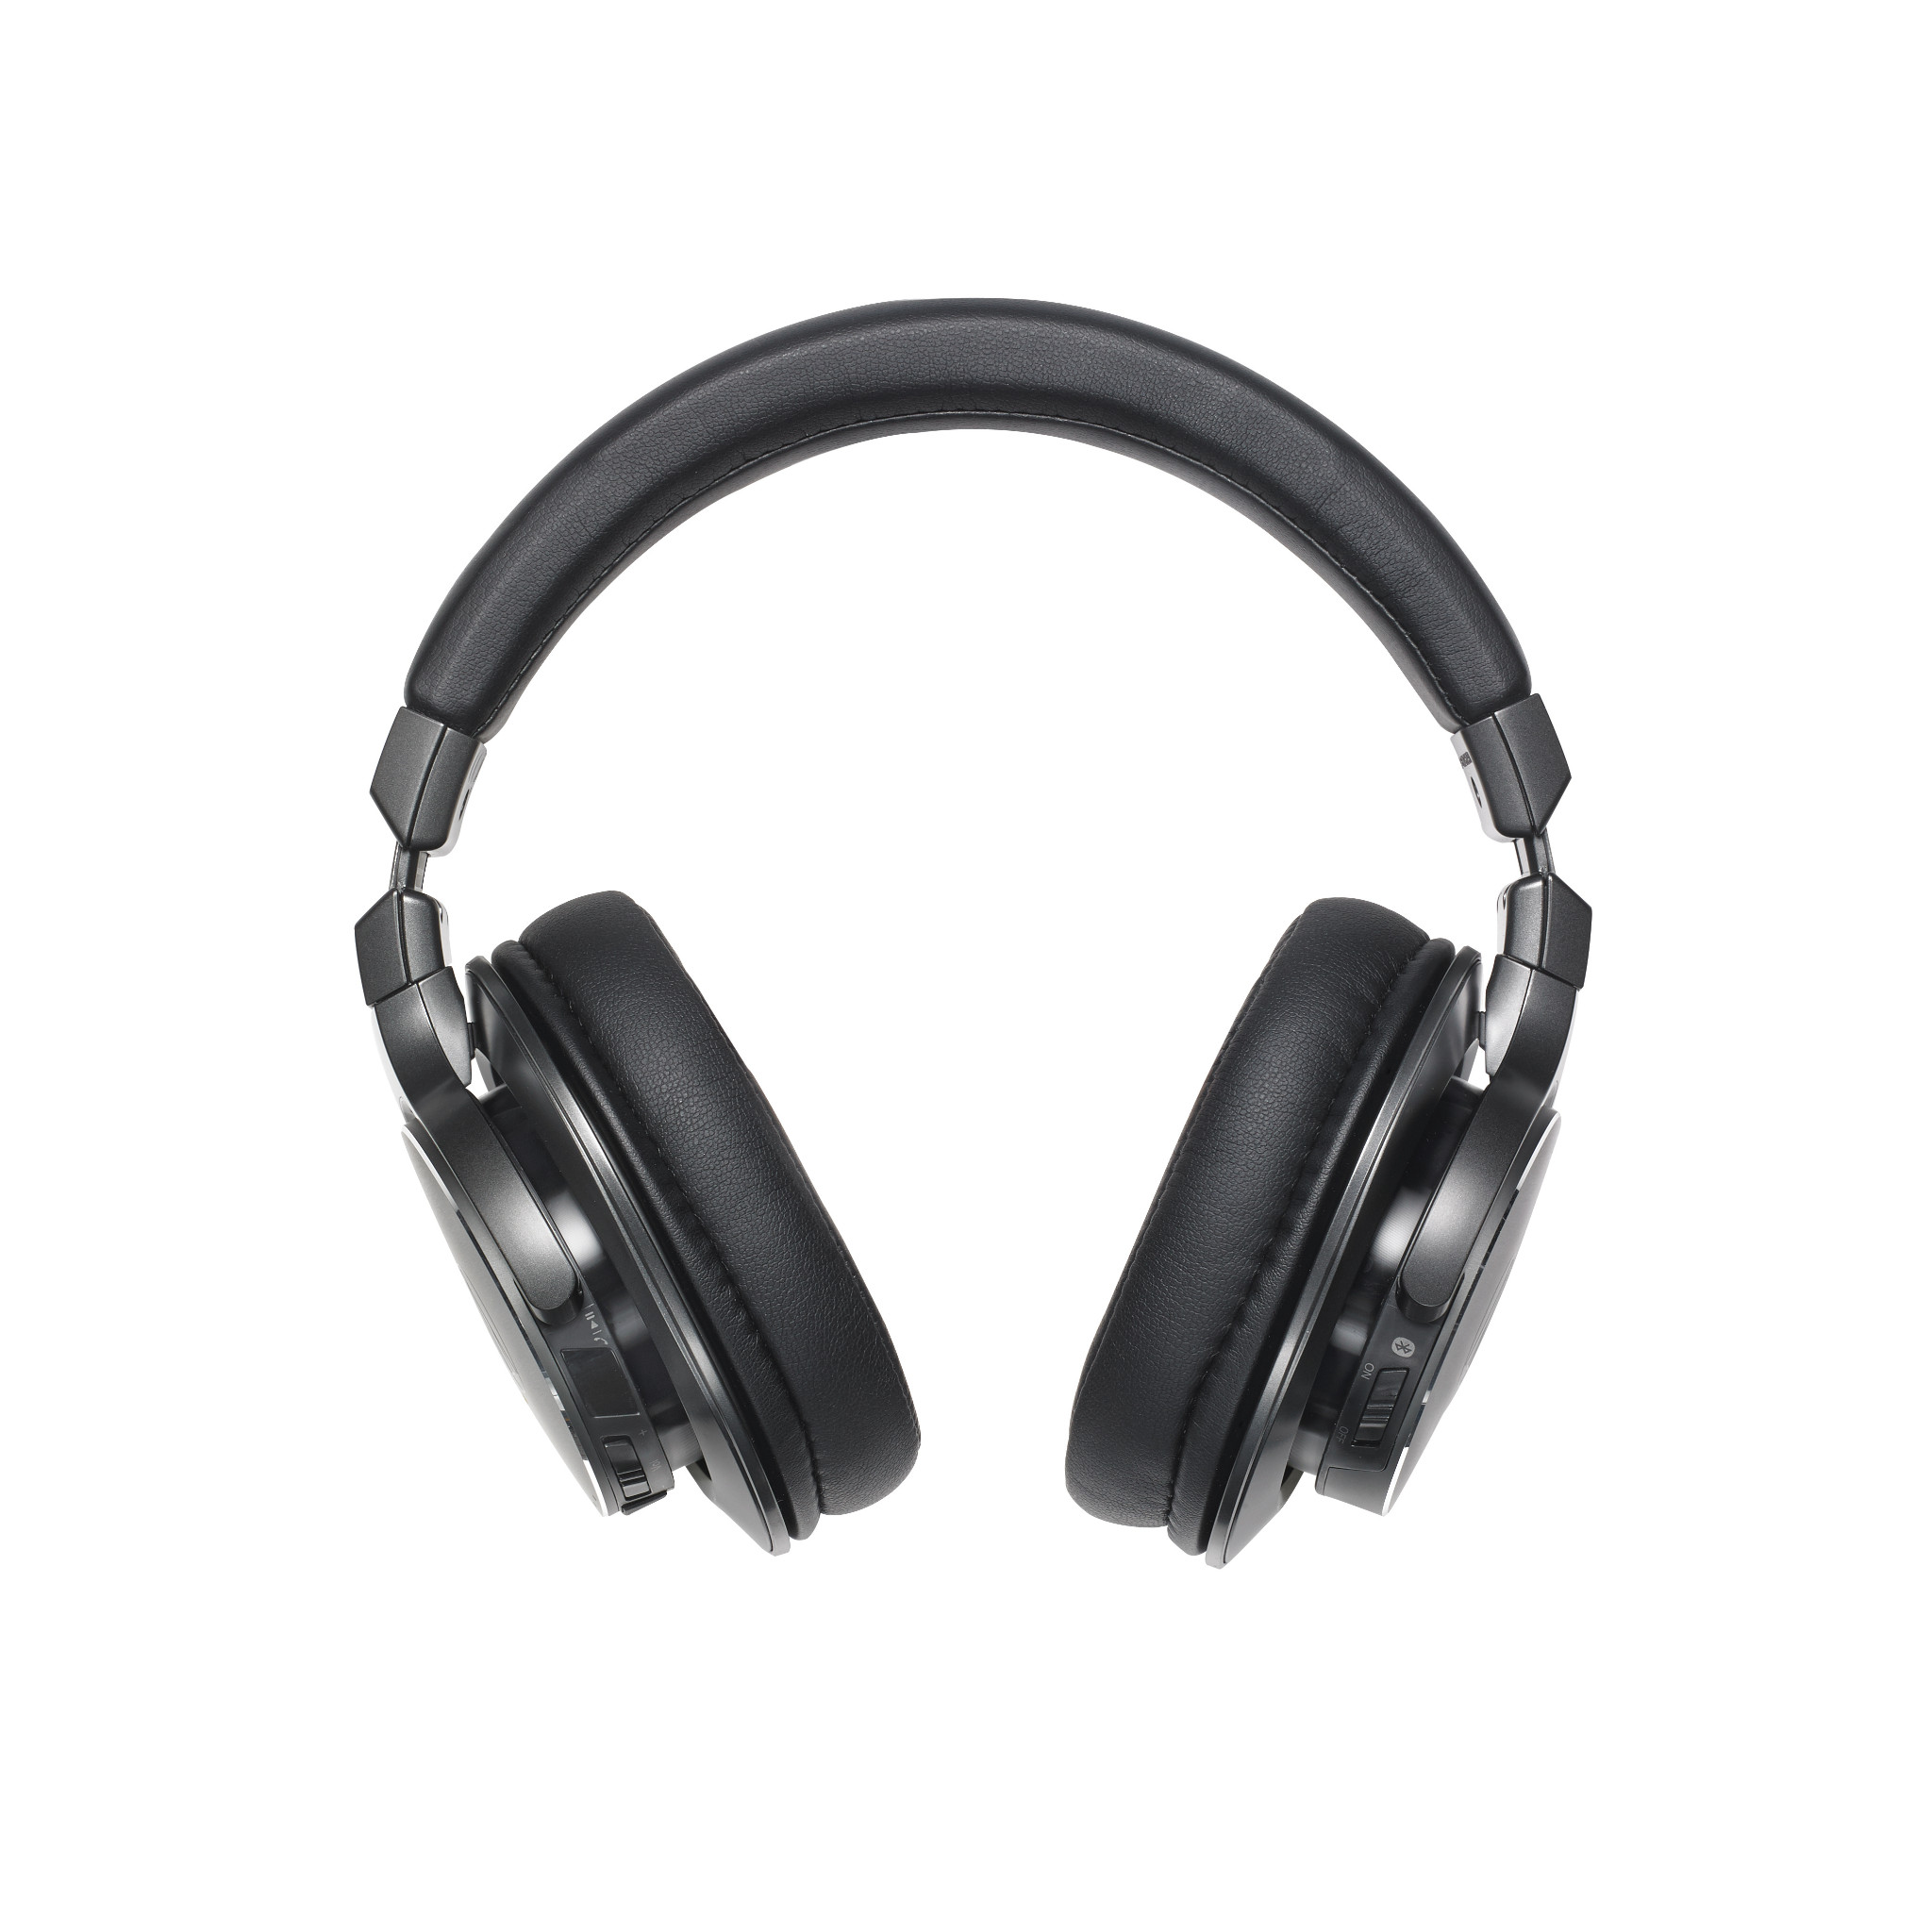 Audioshop cung cấp tai nghe Audio technica chính hãng